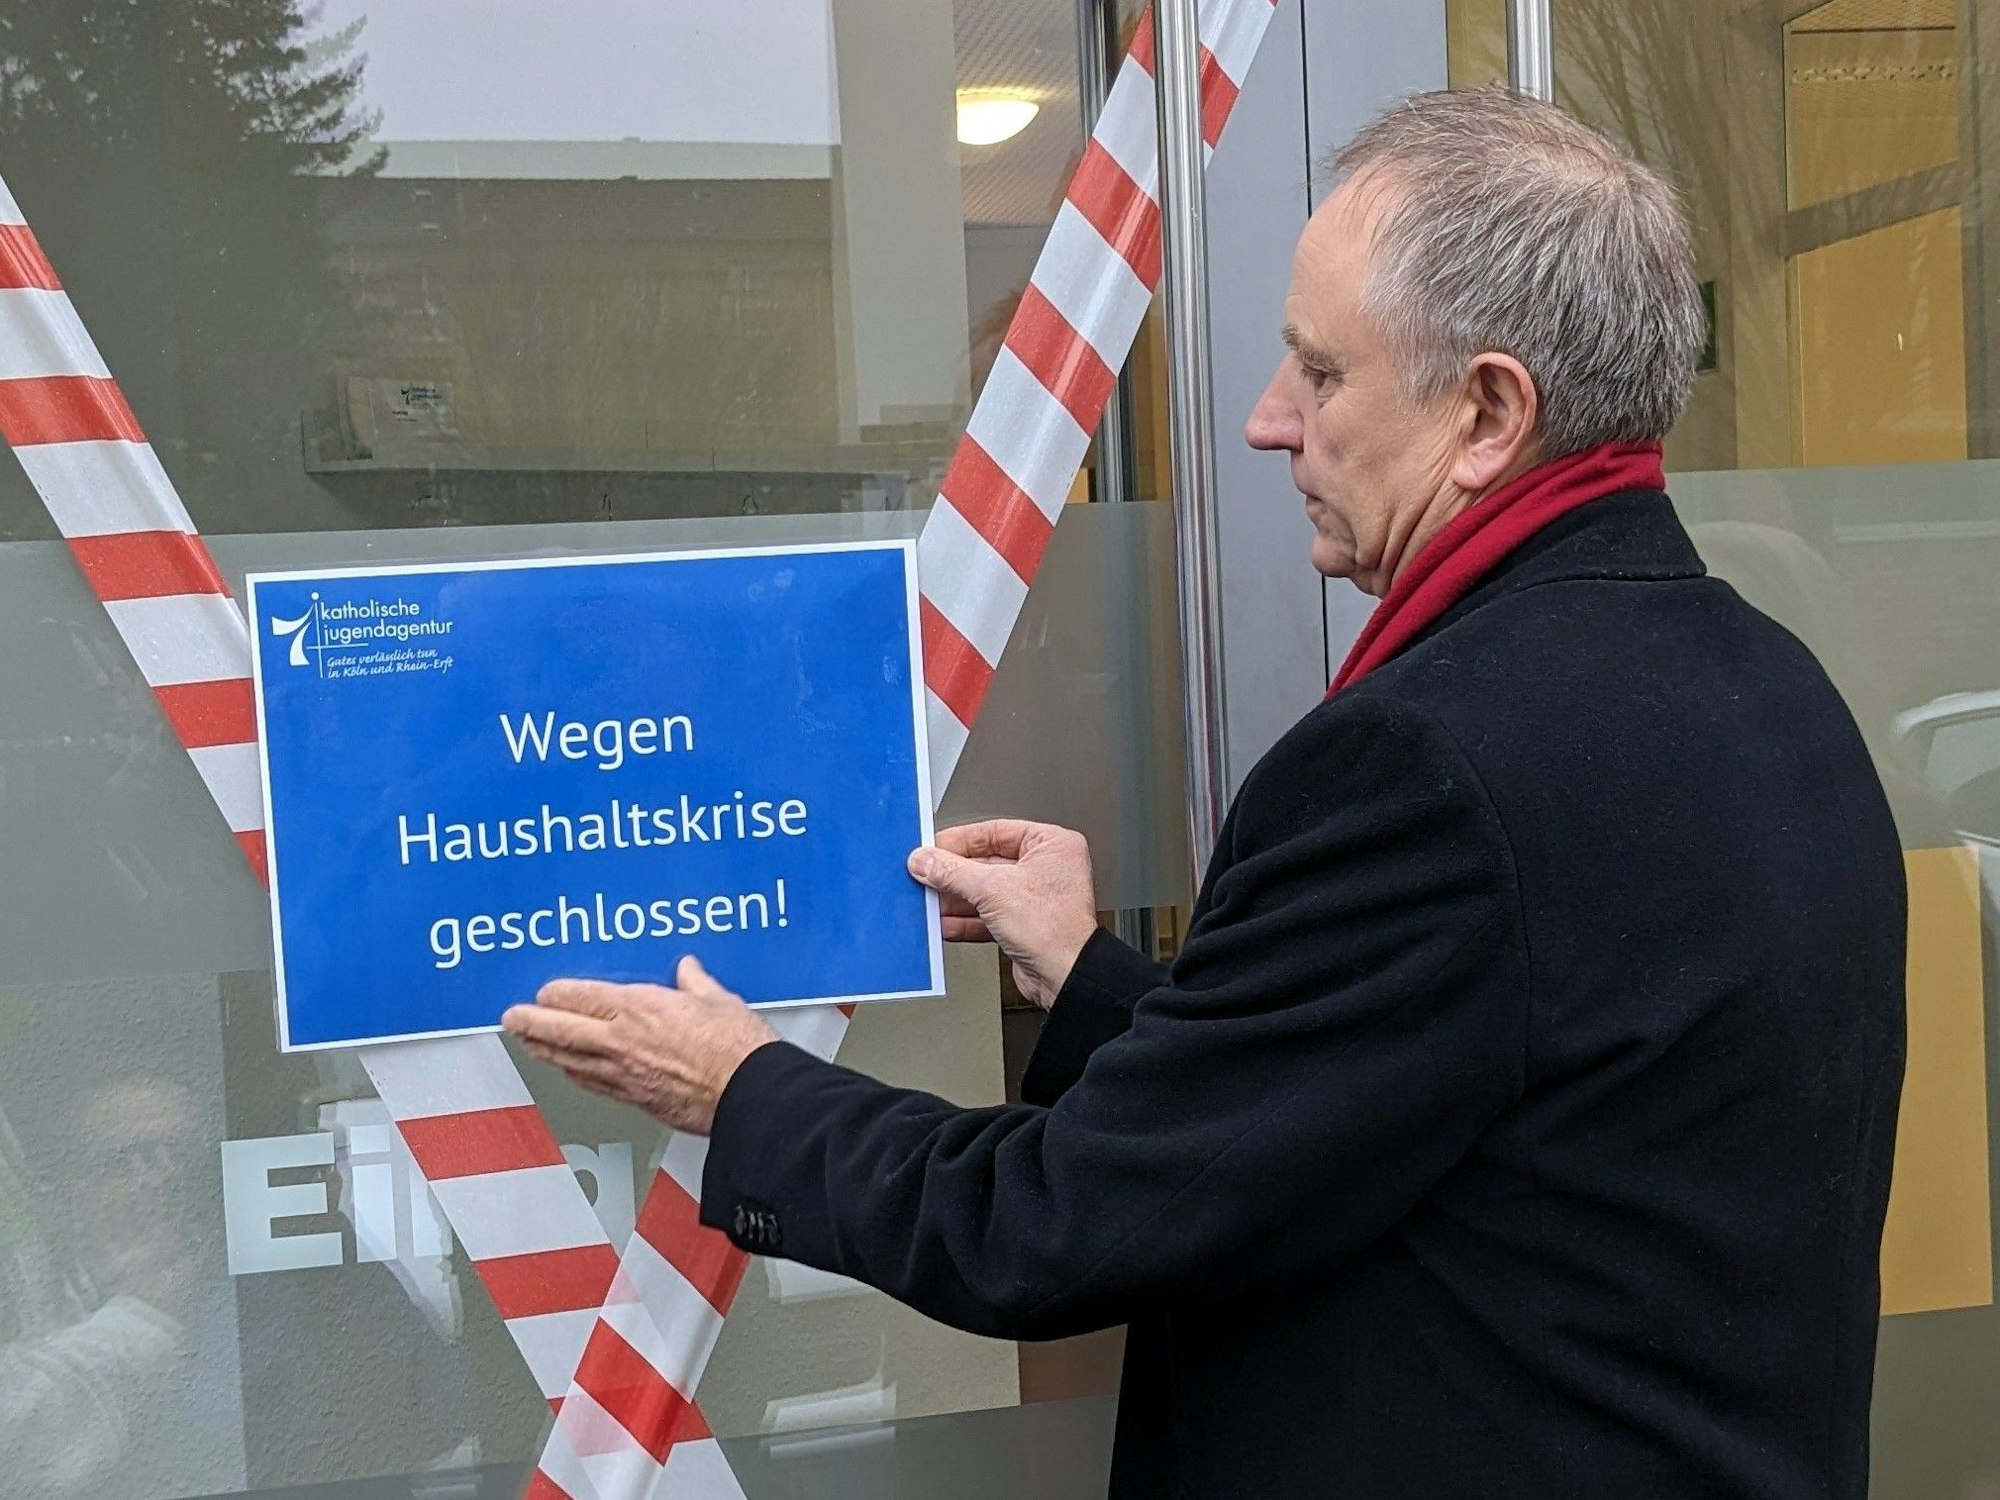 Georg Spitzley bringt ein Schild an, auf dem „Wegen Haushaltskrise geschlossen!“ steht.